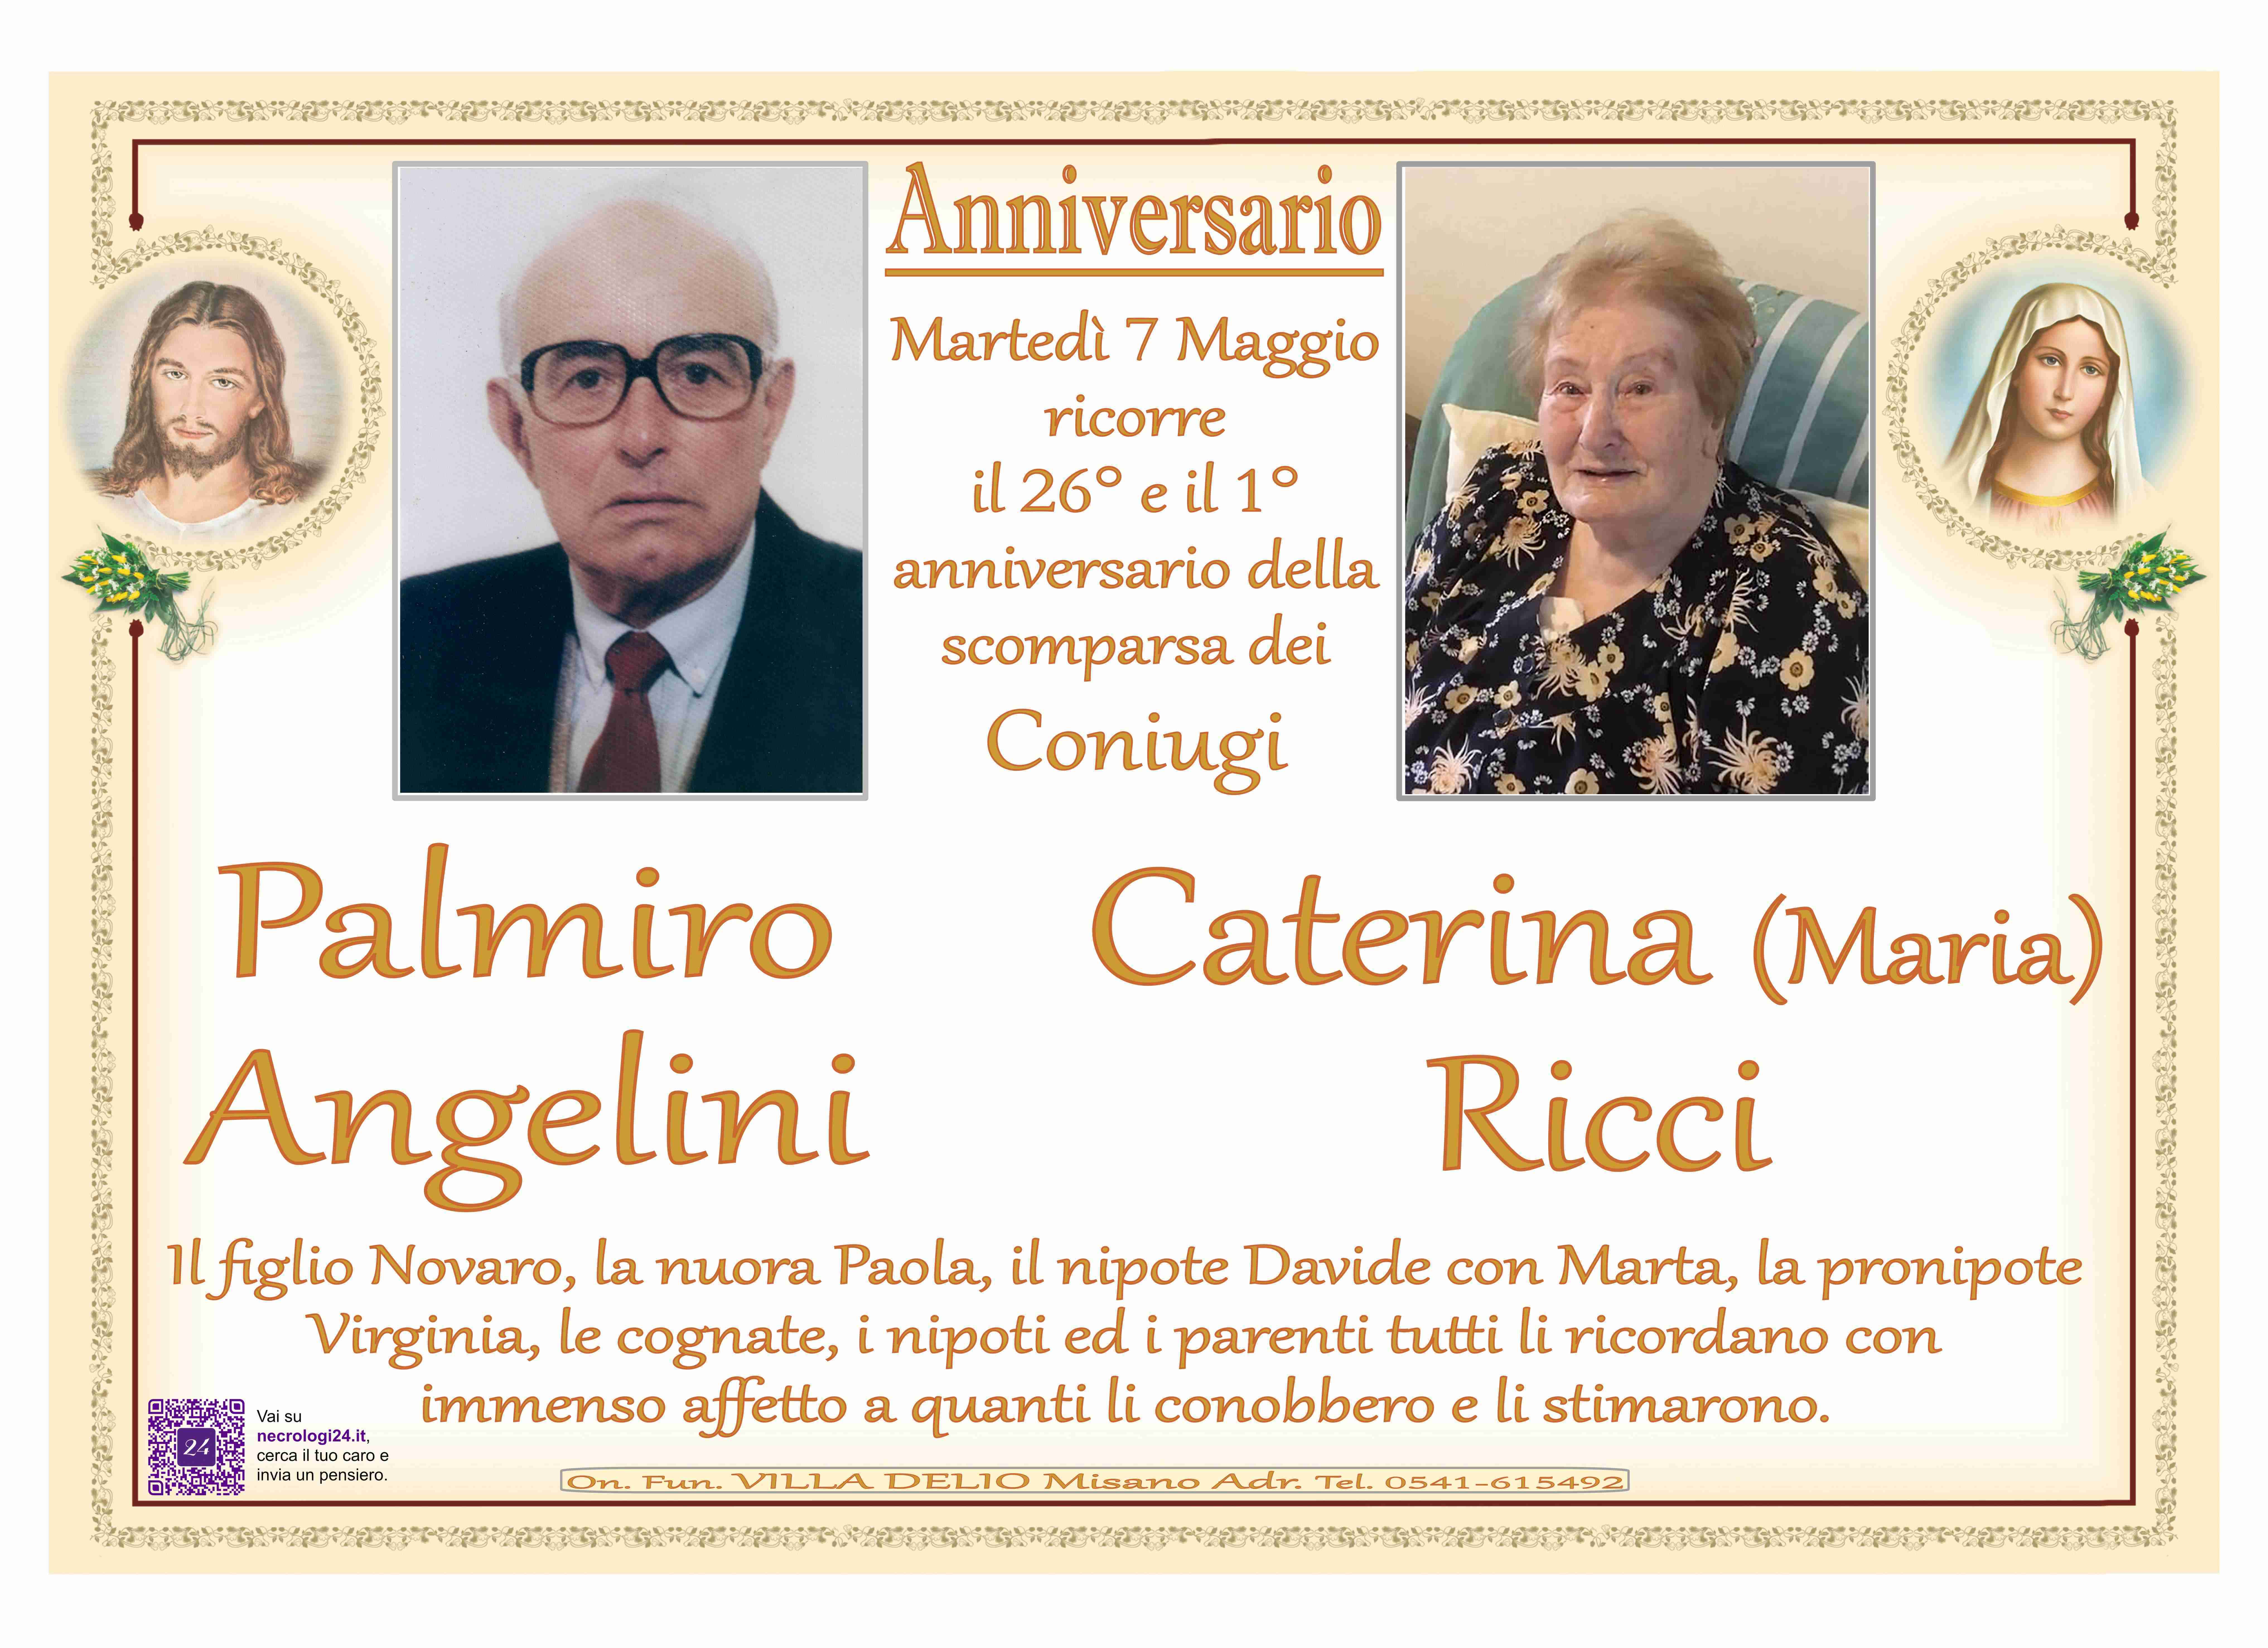 Palmiro Angelini e Caterina (Maria) Ricci